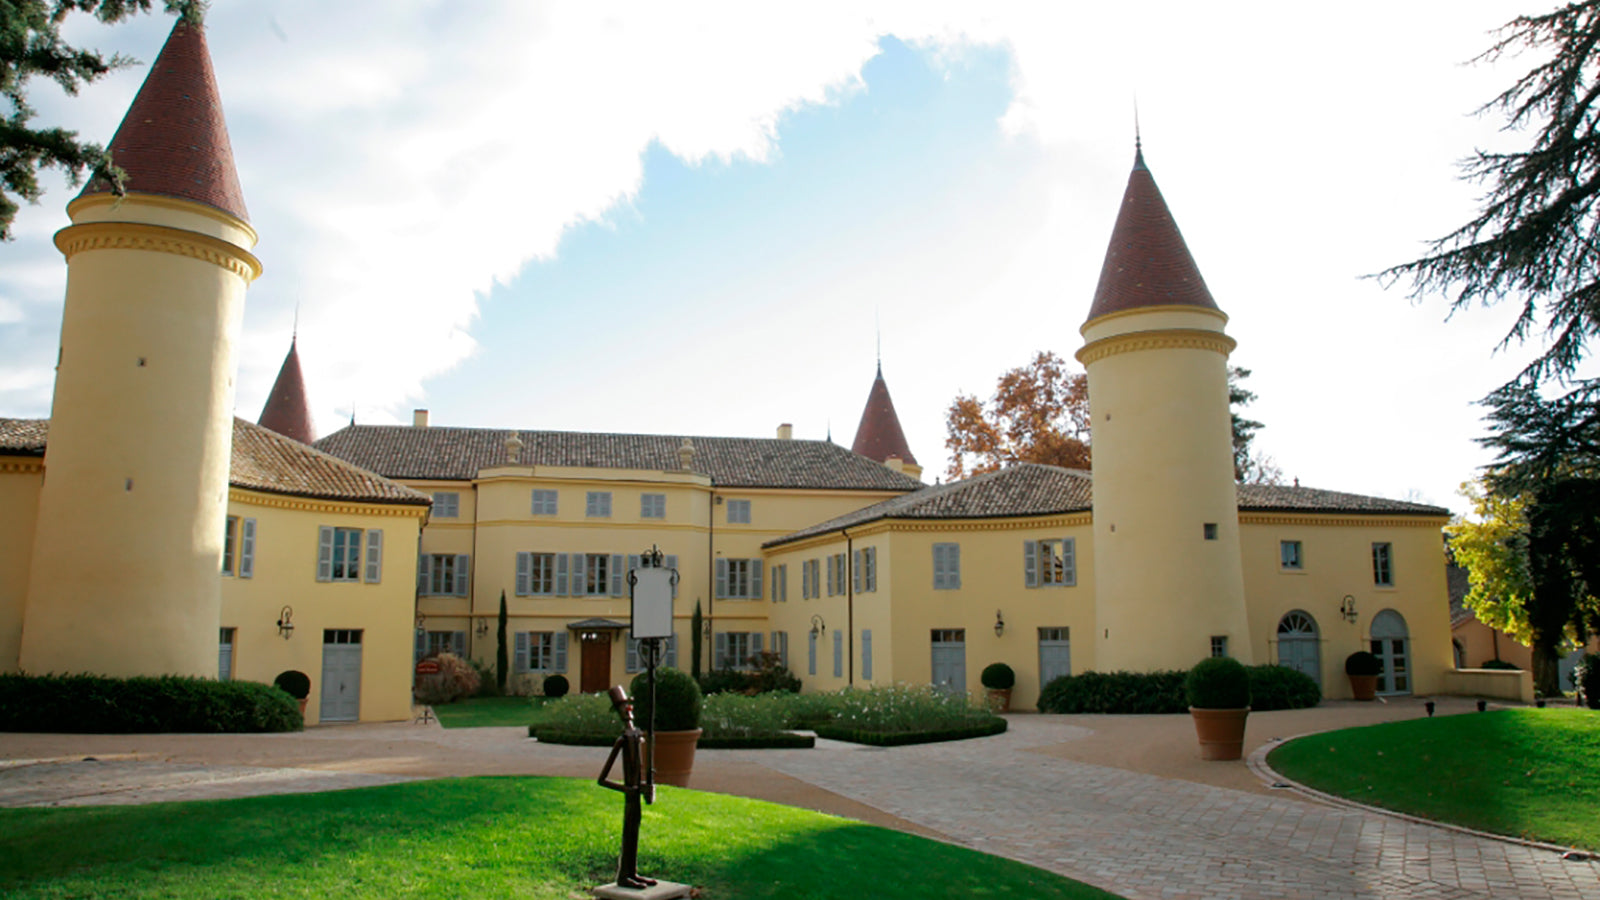 Chateau de Pierreaux